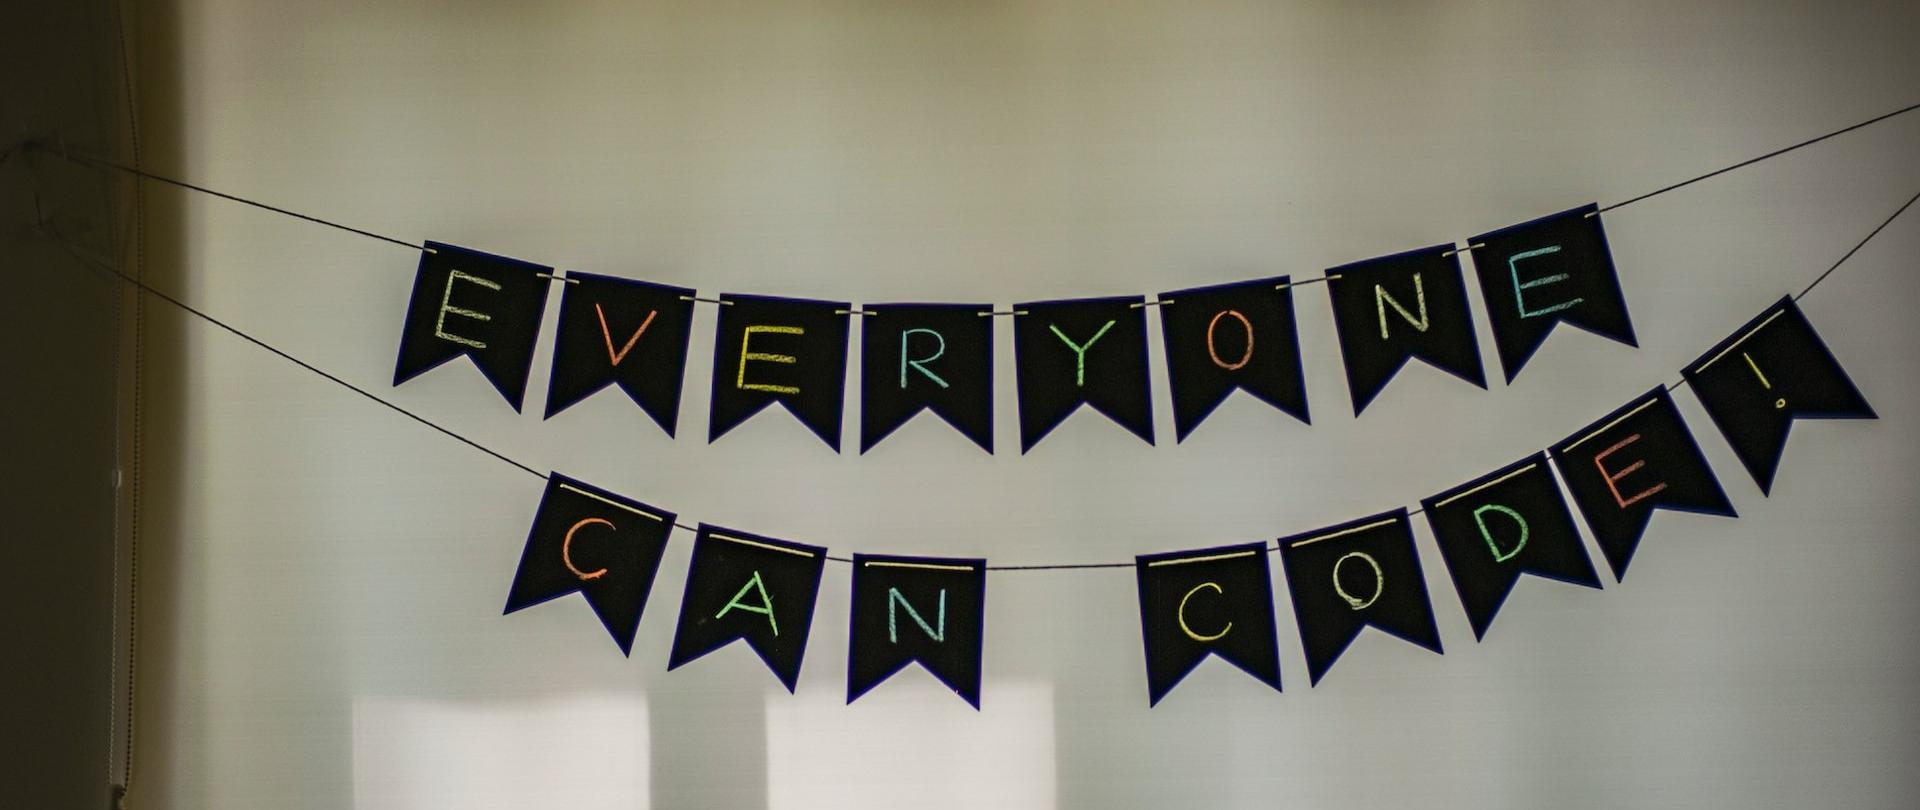 Napis: "Everyone can code!", ułożony z liter powieszonych na sznurkach.